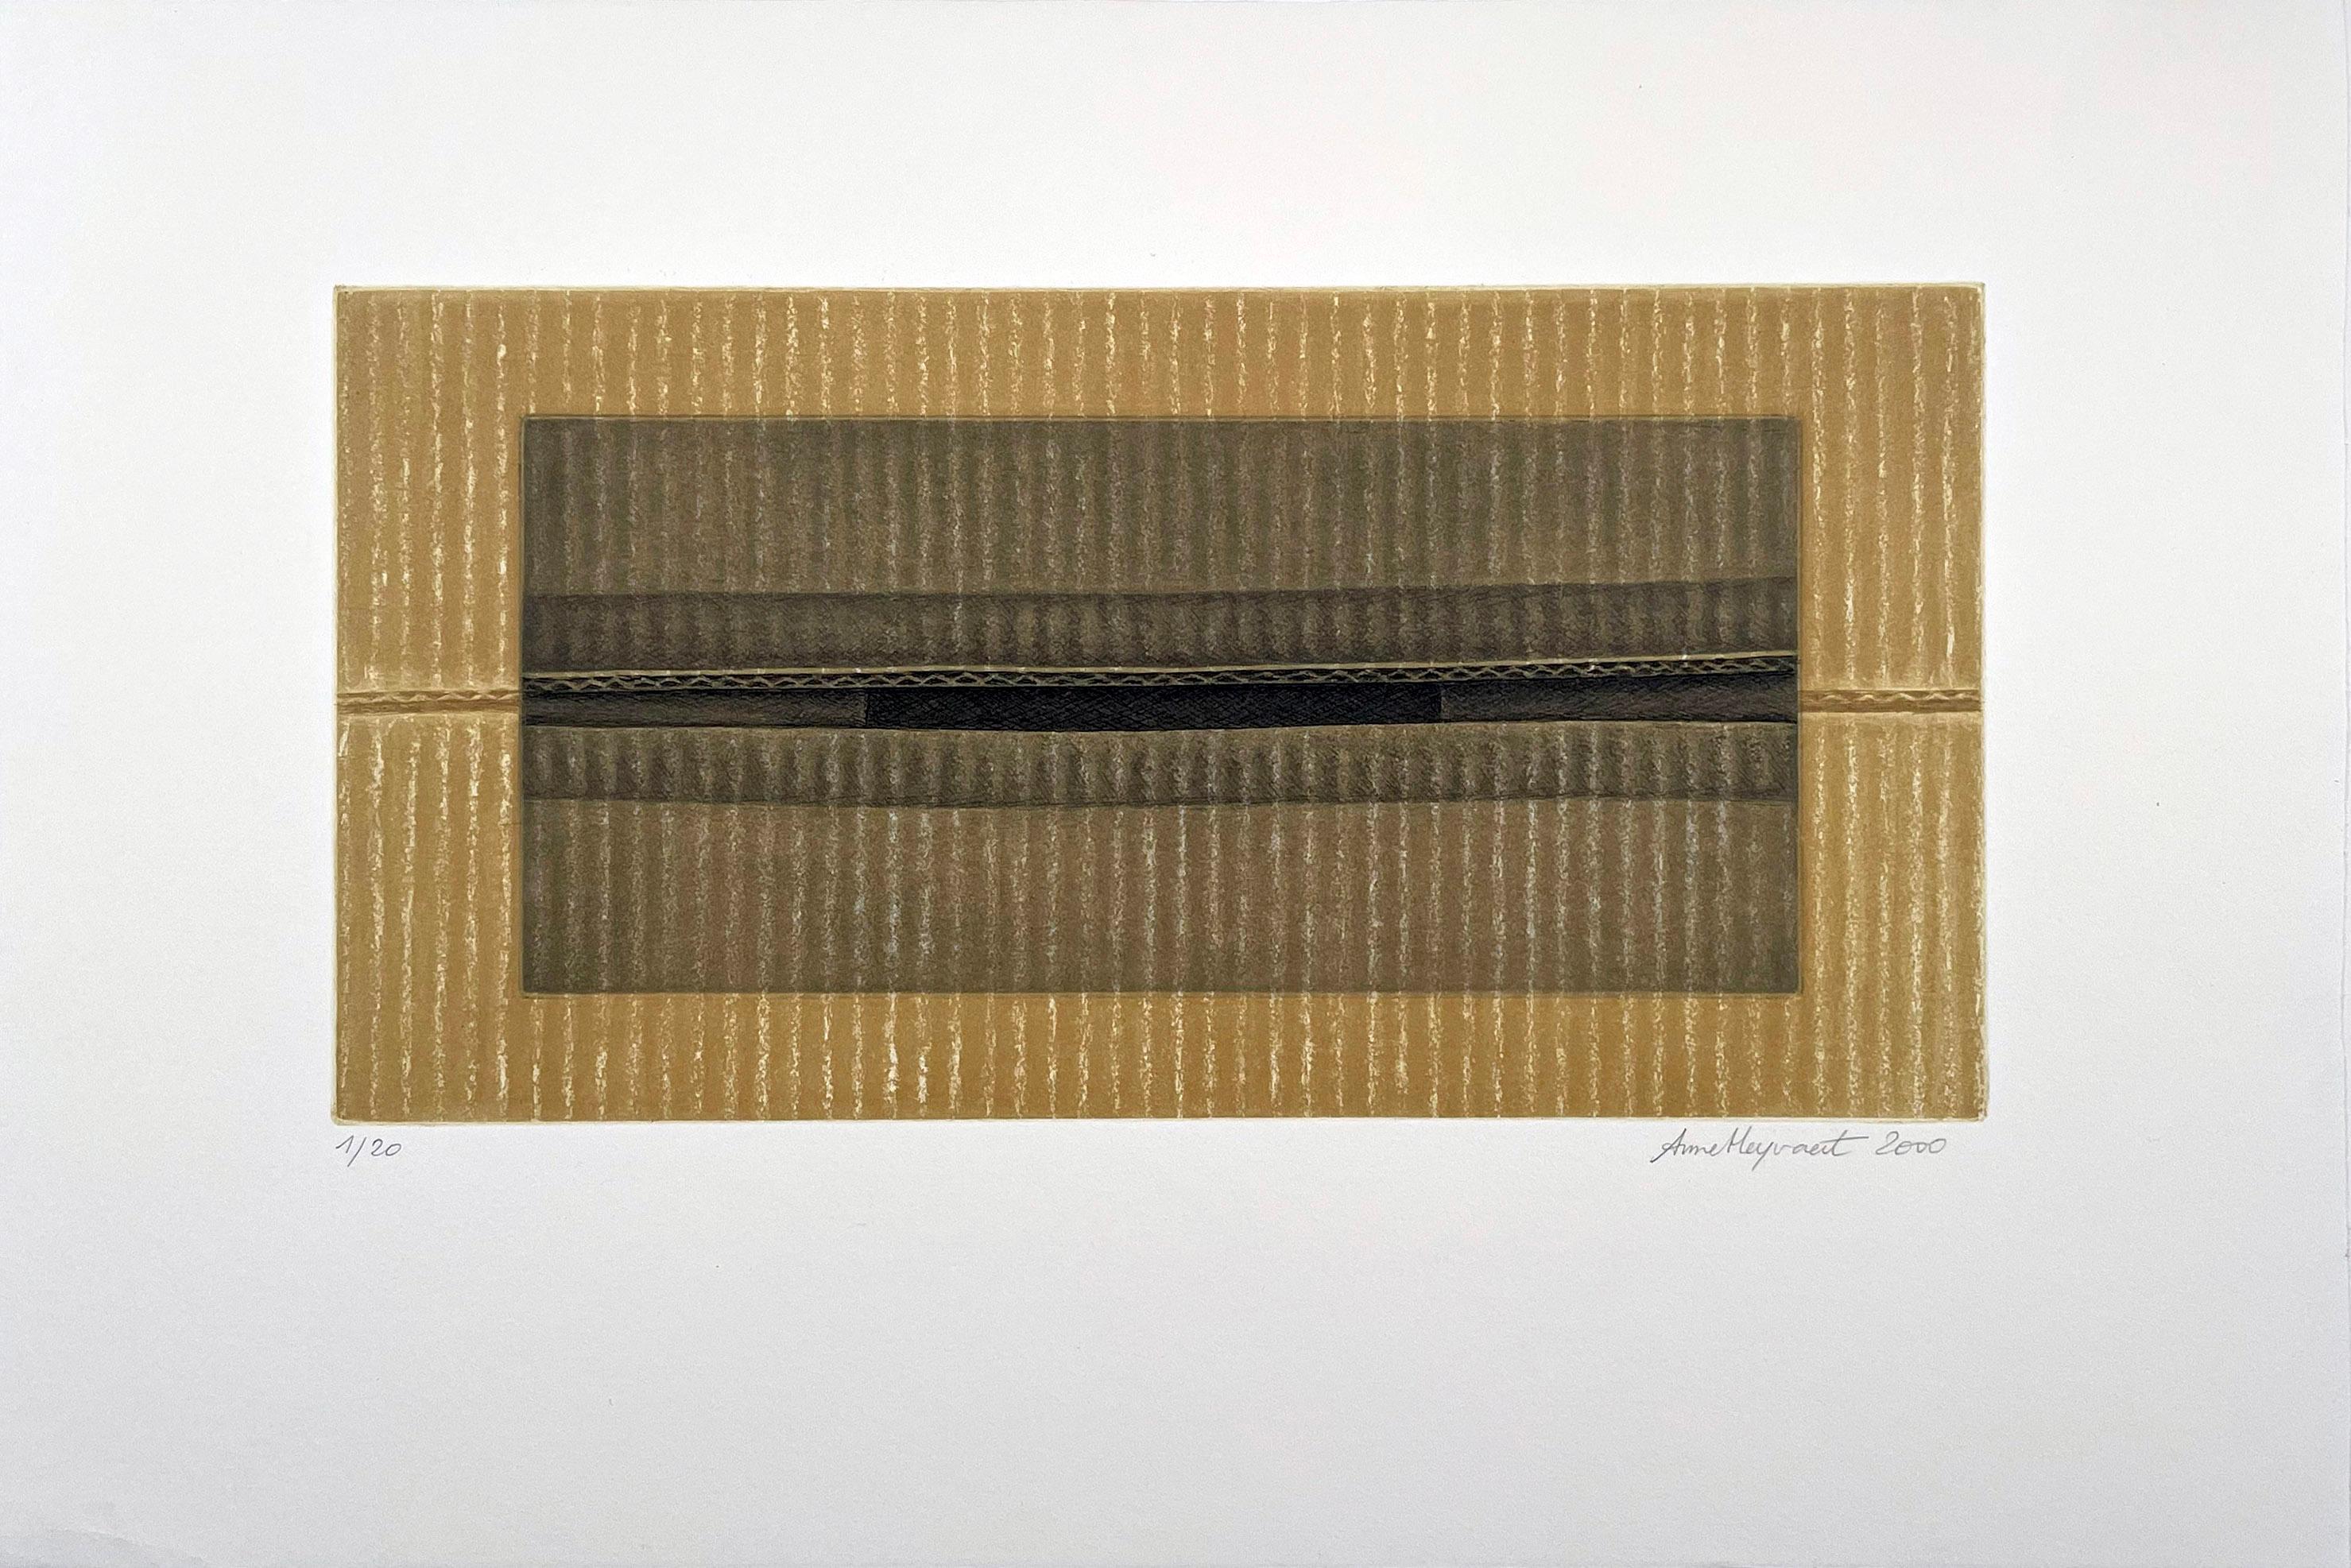 Opening on cardboard - Print by Anne Heyvaert